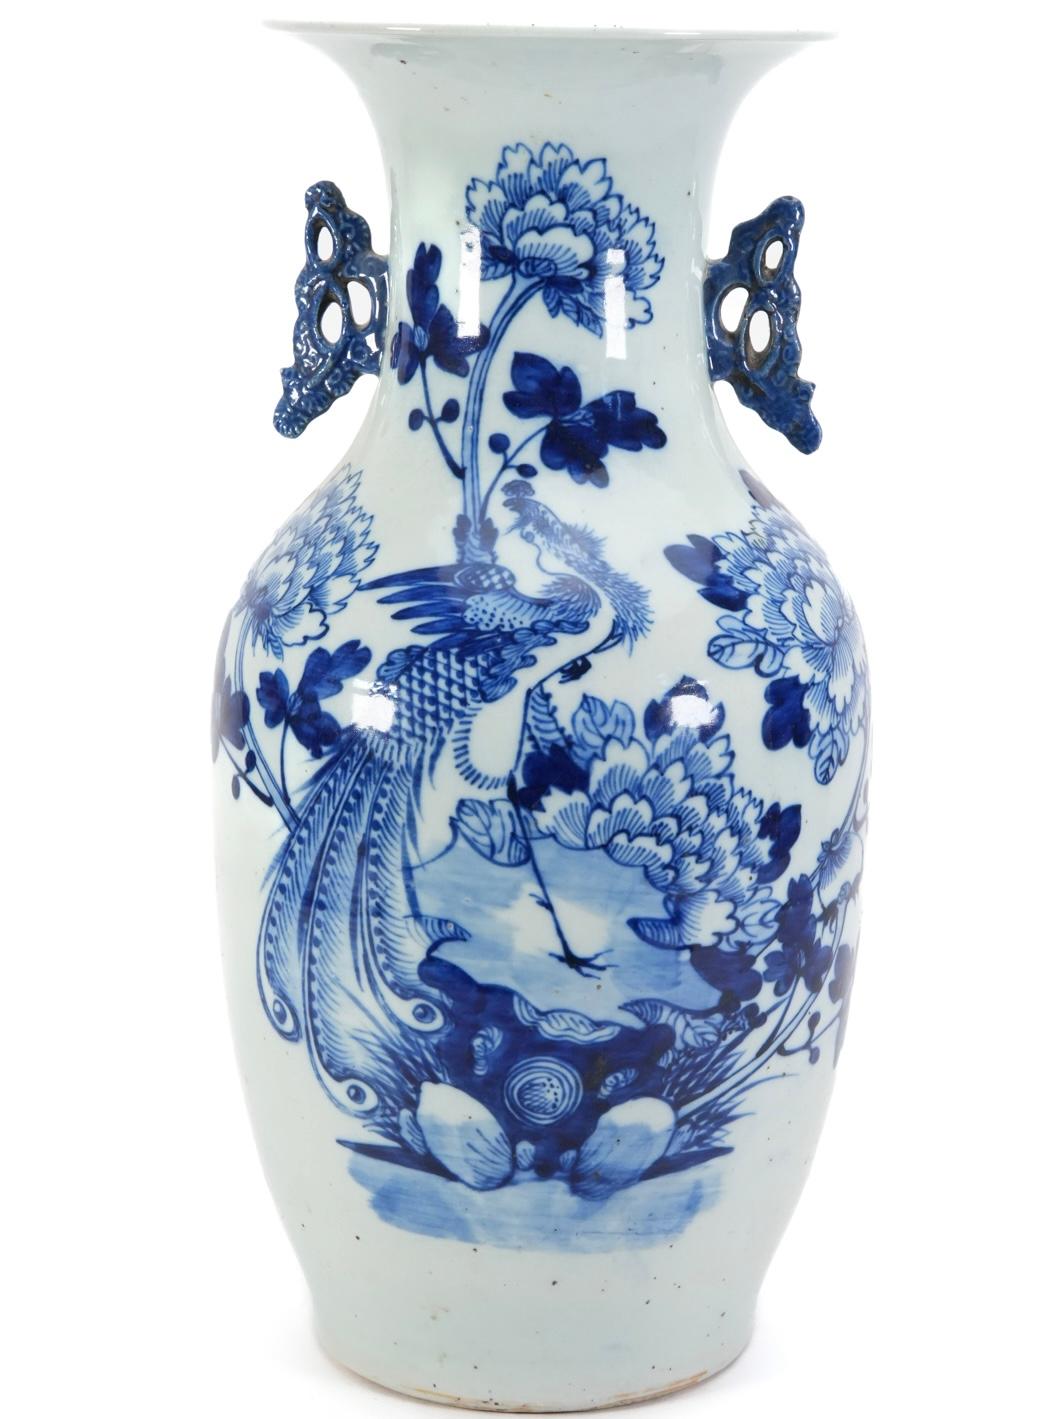 Schöne chinesische Porzellanvase in Balusterform mit weißem und blauem Dekor, das einen von Blumen und Blättern umgebenen Pfau zeigt.
Ende 19. Jh. 
Diese dekorative Vase hat durchbrochene Griffe mit einem Blattmotiv und einen harmonischen,